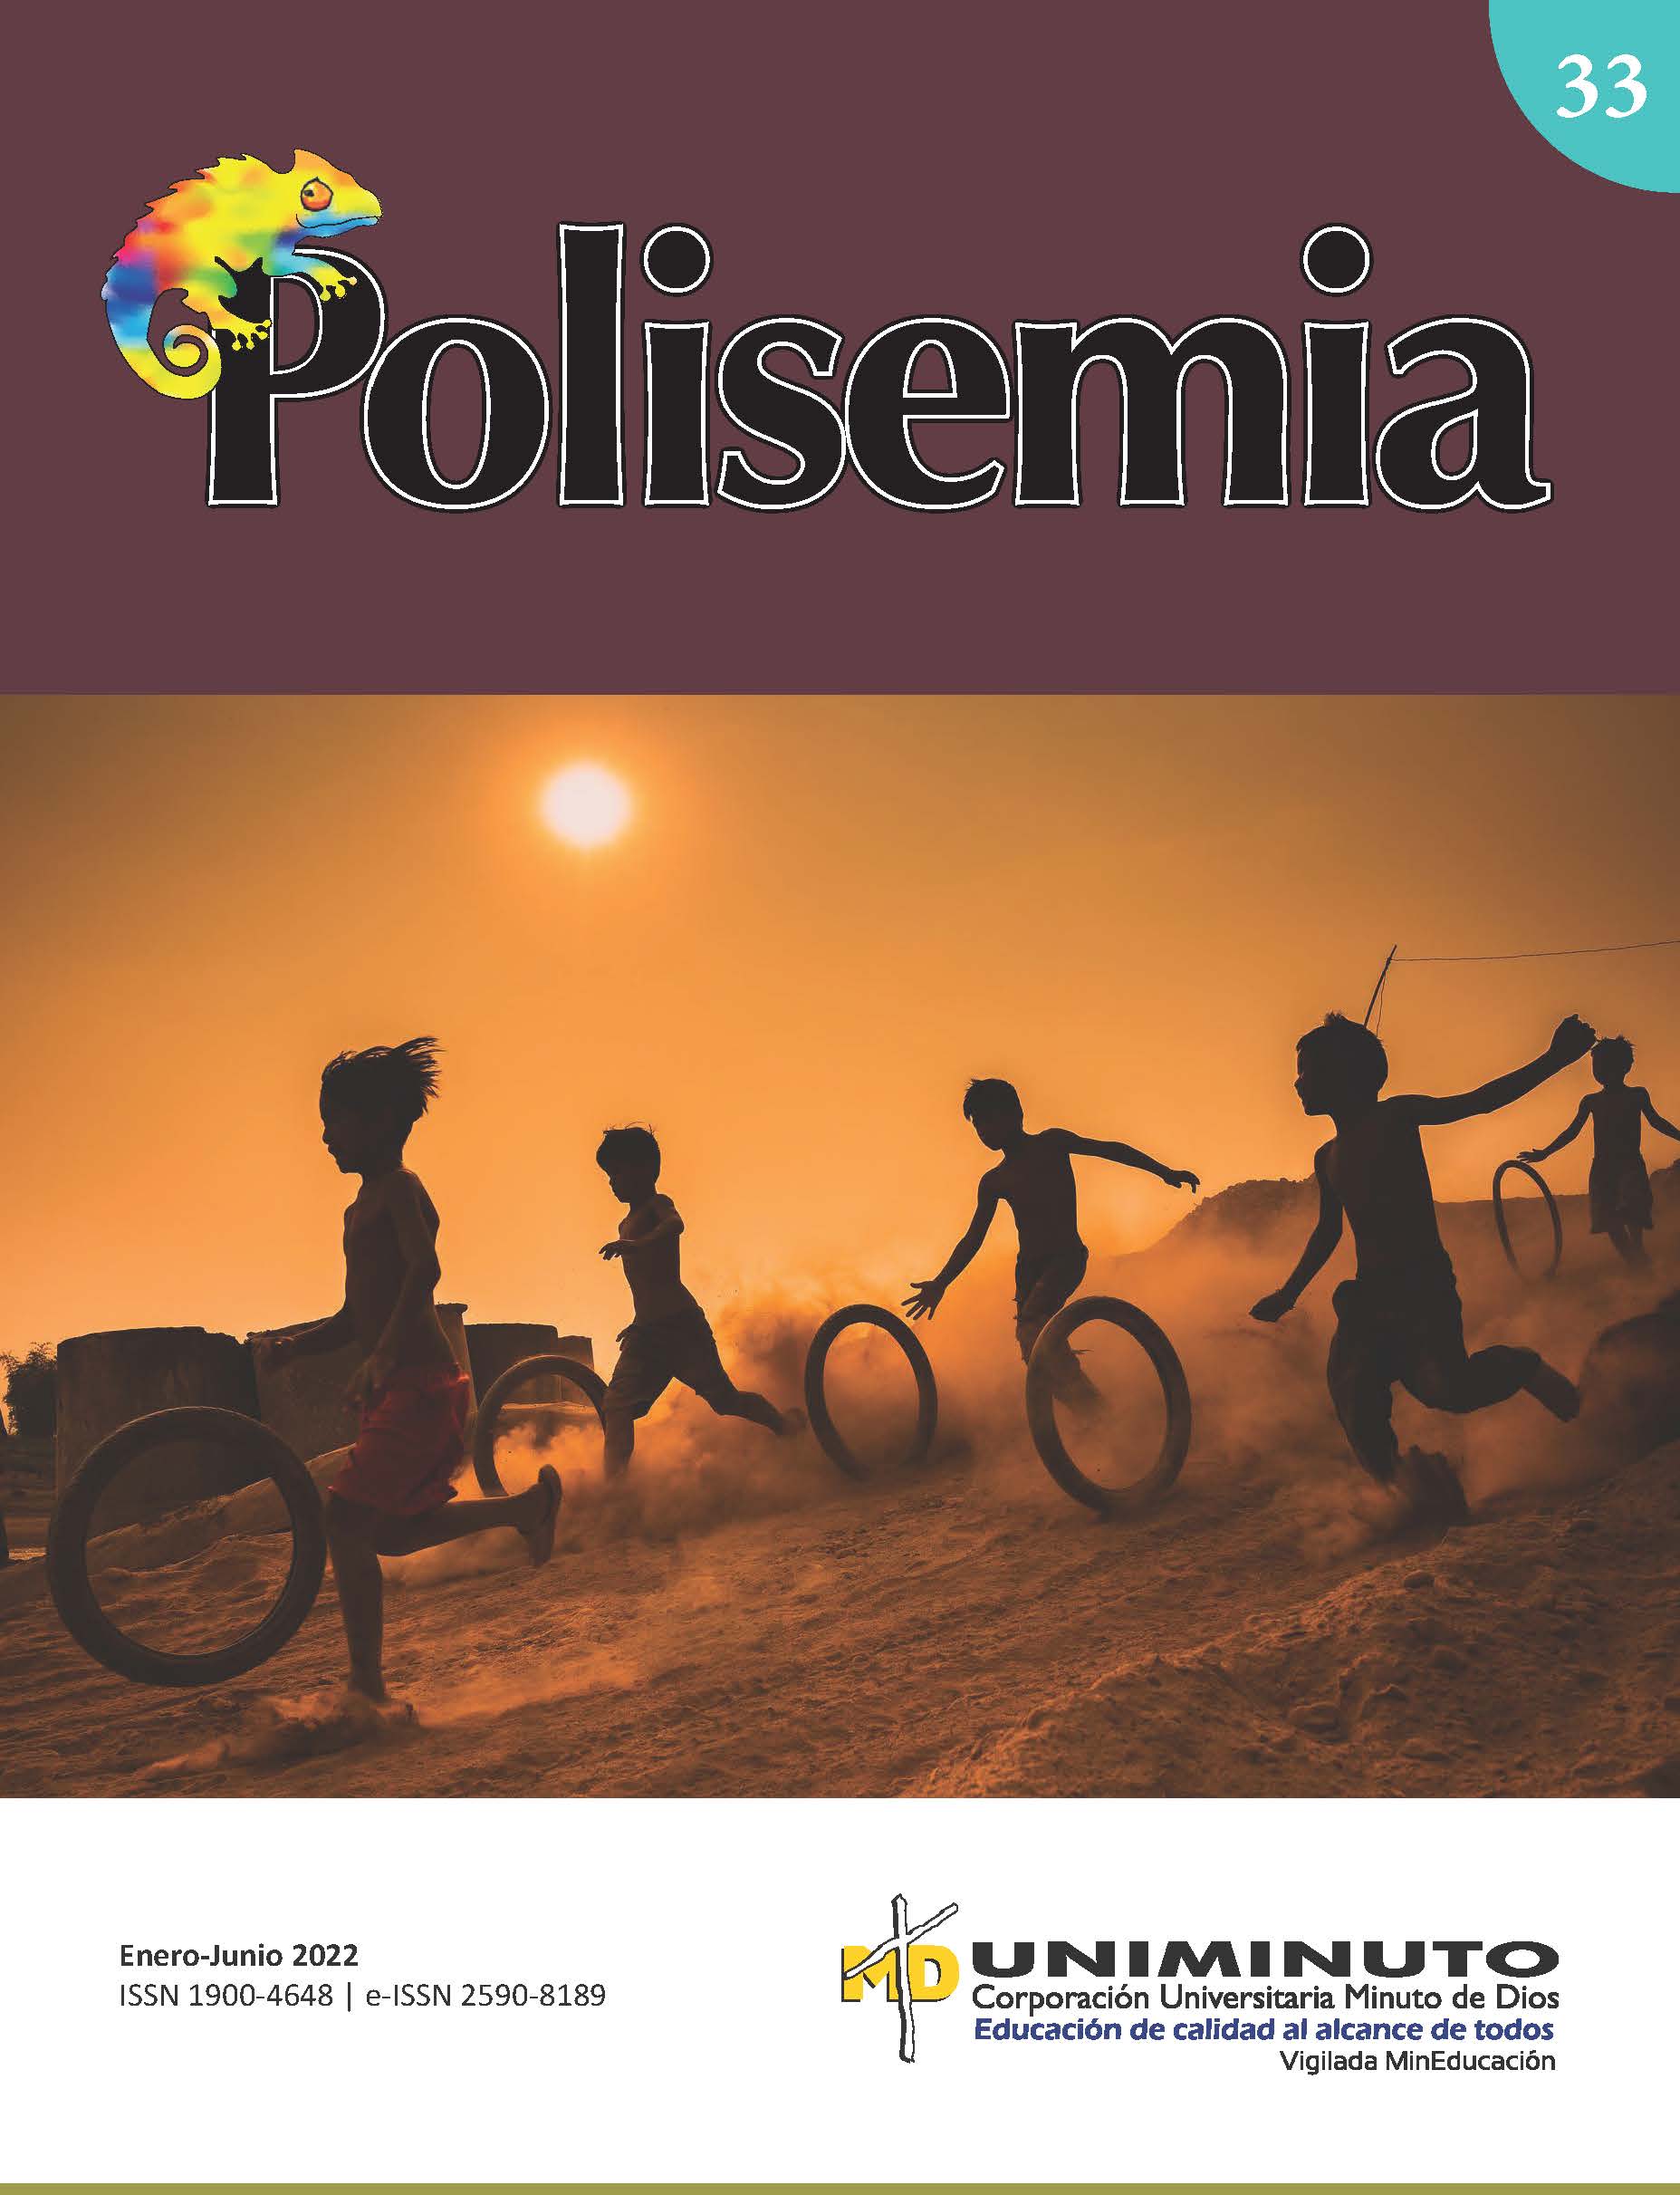 Portada número 33 con el nombre Polisemia y la imagen de niño sy niñas jugando con llantas de bicicleta en una ladera polvorosa al atardecer.